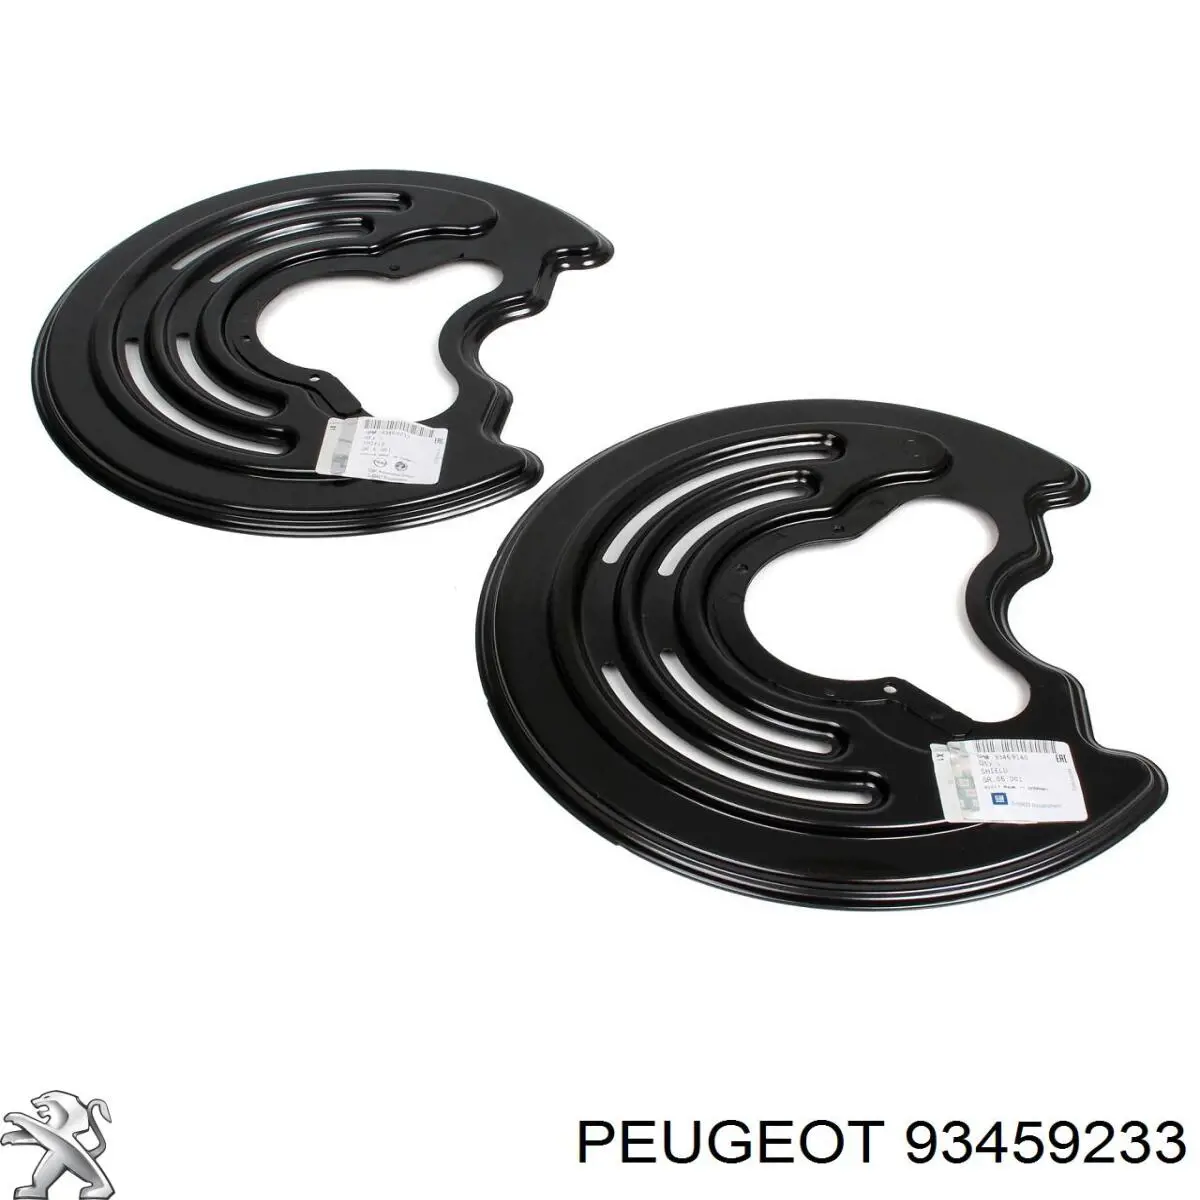 Chapa protectora contra salpicaduras, disco de freno trasero derecho 93459233 Peugeot/Citroen